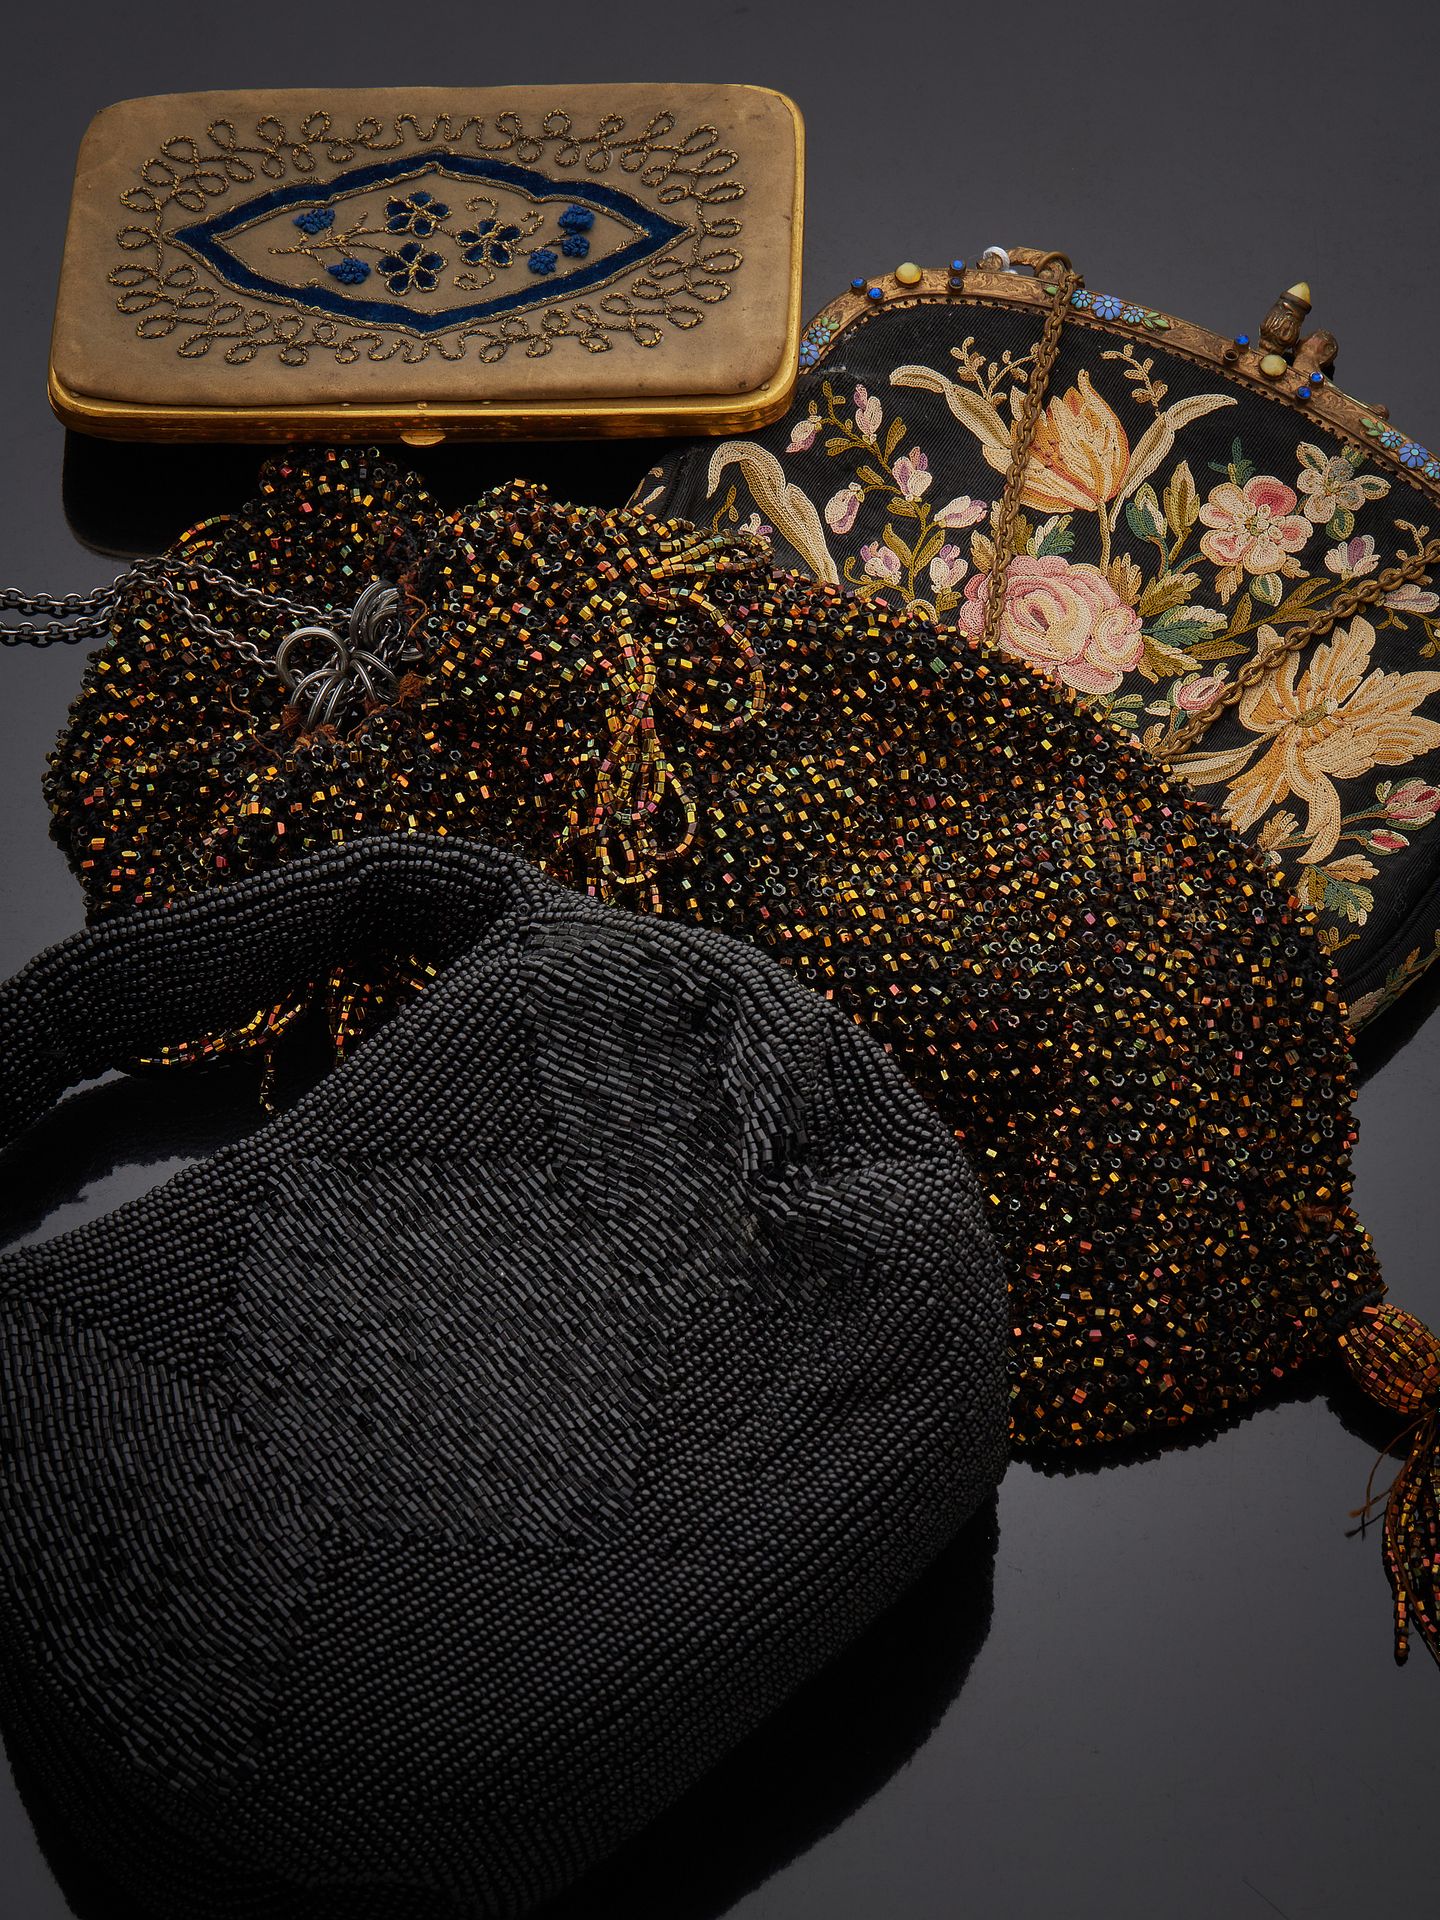 Null 拍品包括 ：
一个花卉烟盒
绣有珐琅的小手袋，带花饰的链条
一个黑色珍珠手柄小手袋
一个镶有彩色珍珠的小手袋
事故